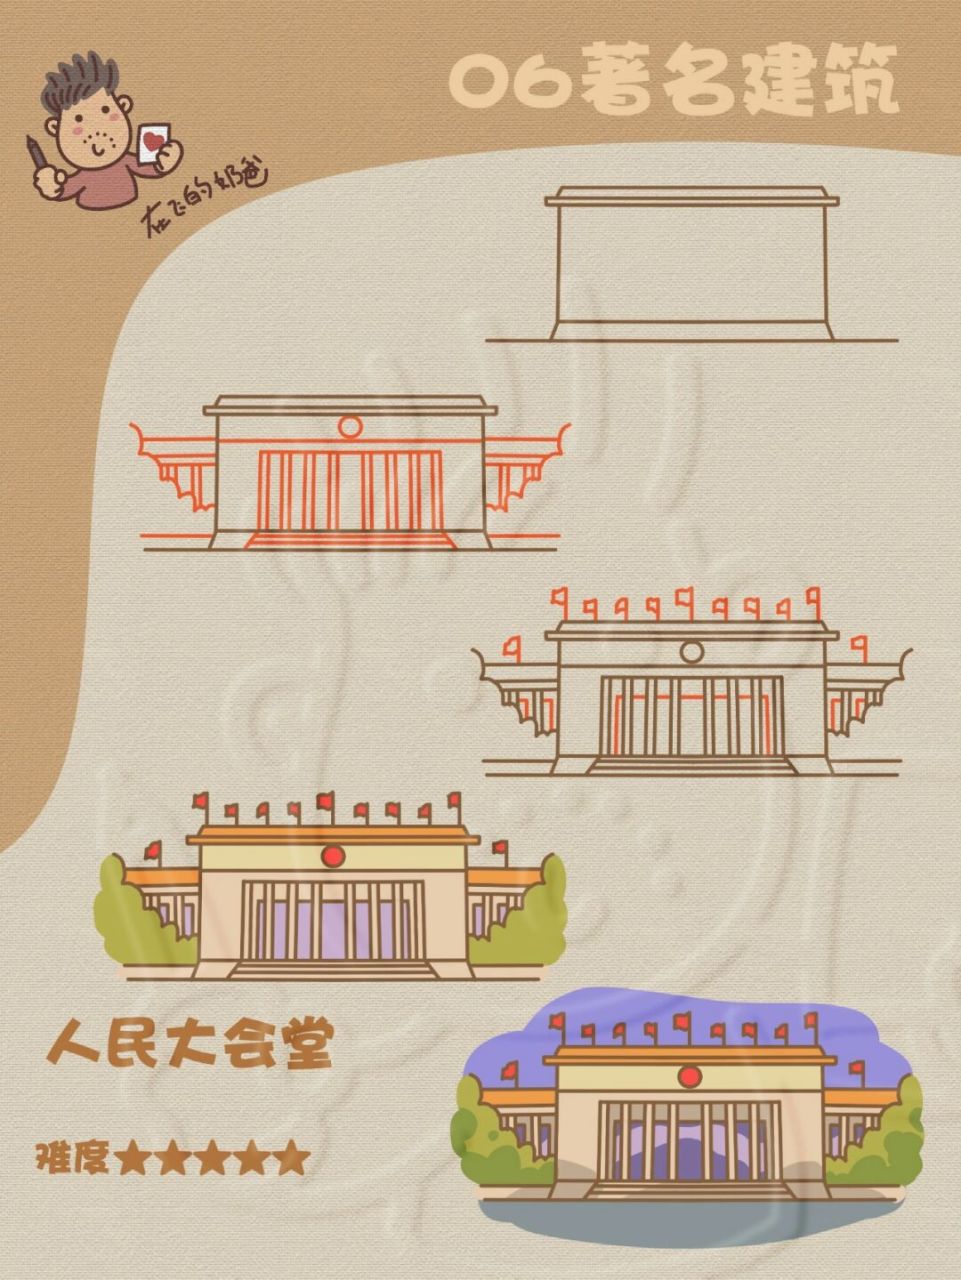 北京人民大会堂简笔画图片